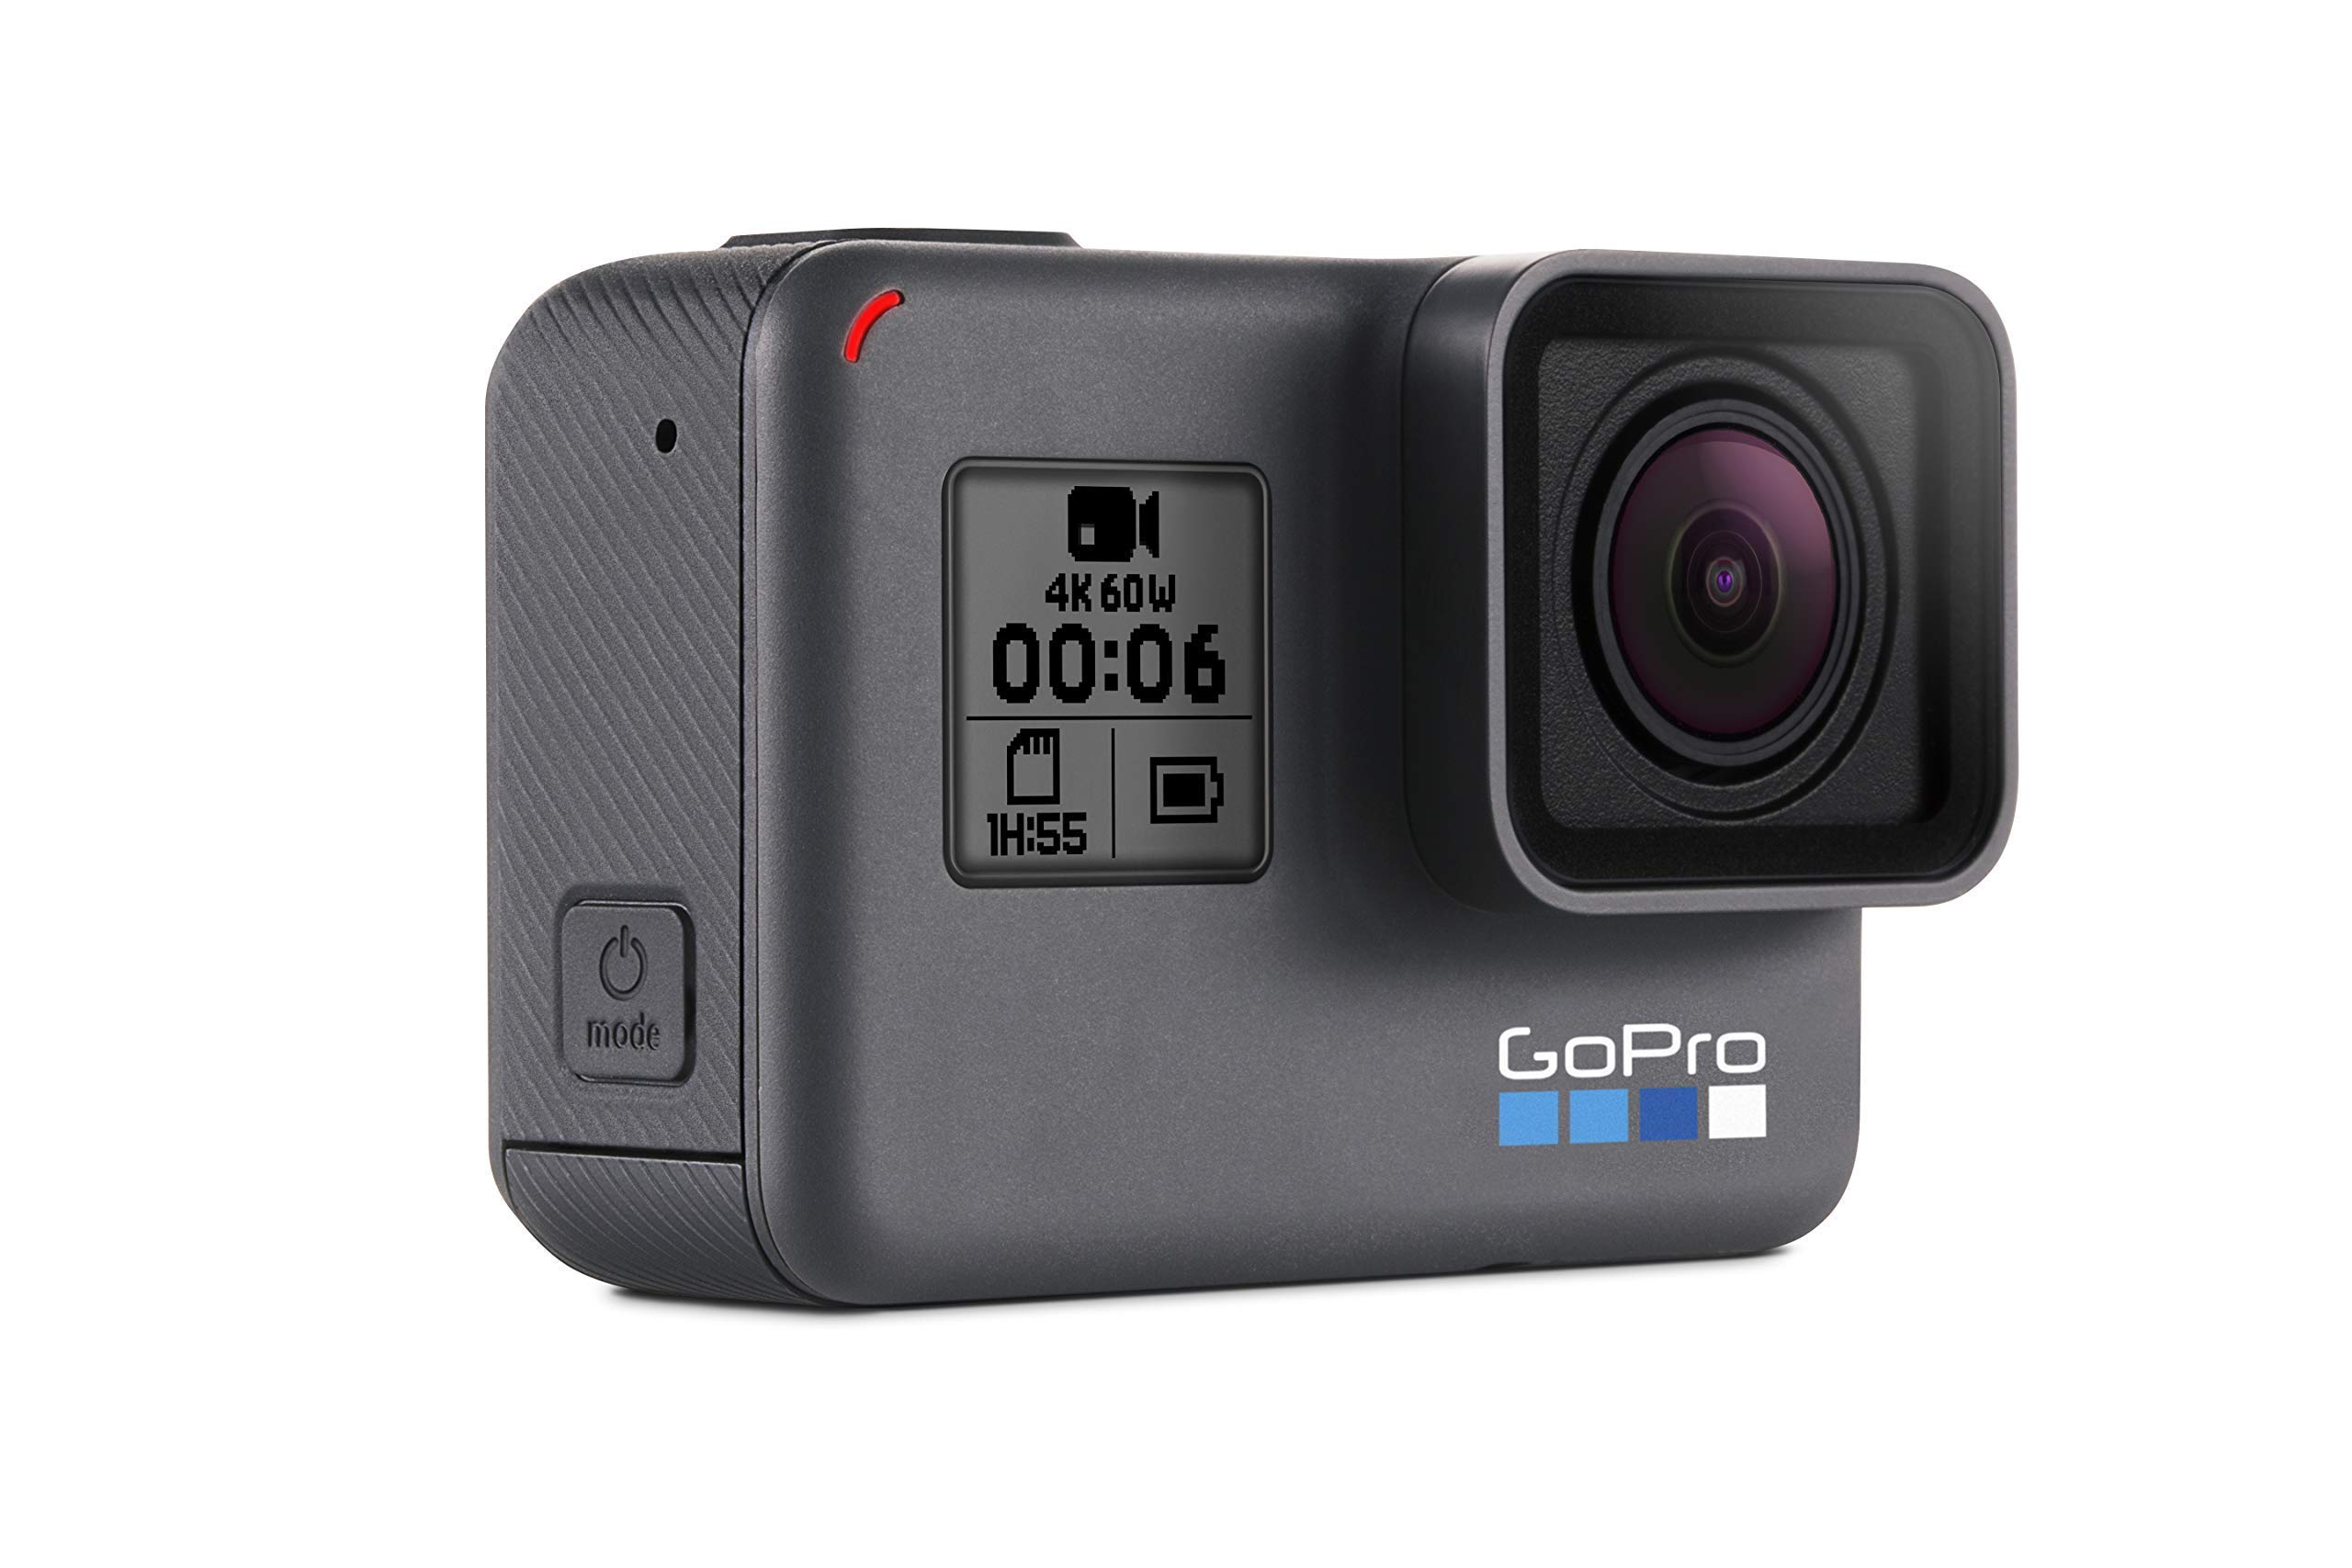 GoPro HERO6 Black 4K Action Camera (Renewed)